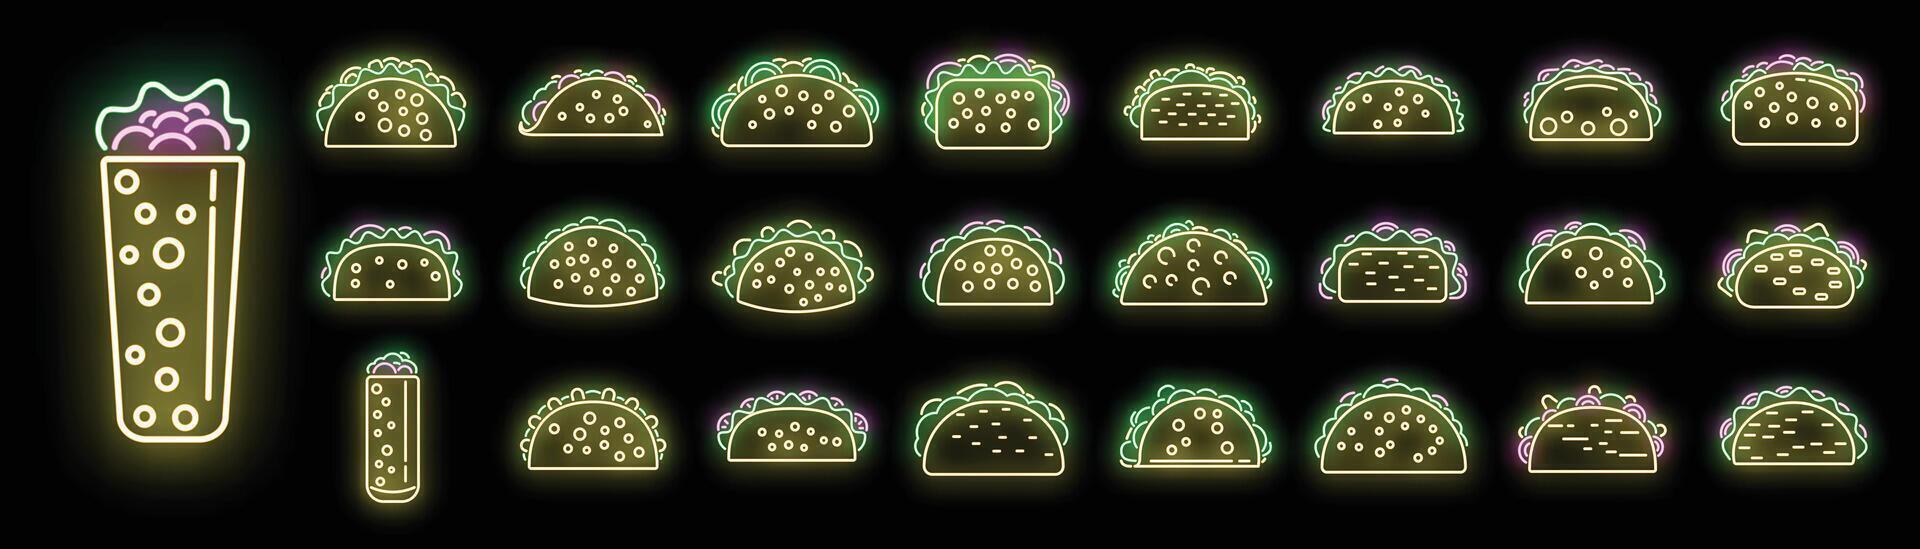 conjunto de ícones de tacos neon vector